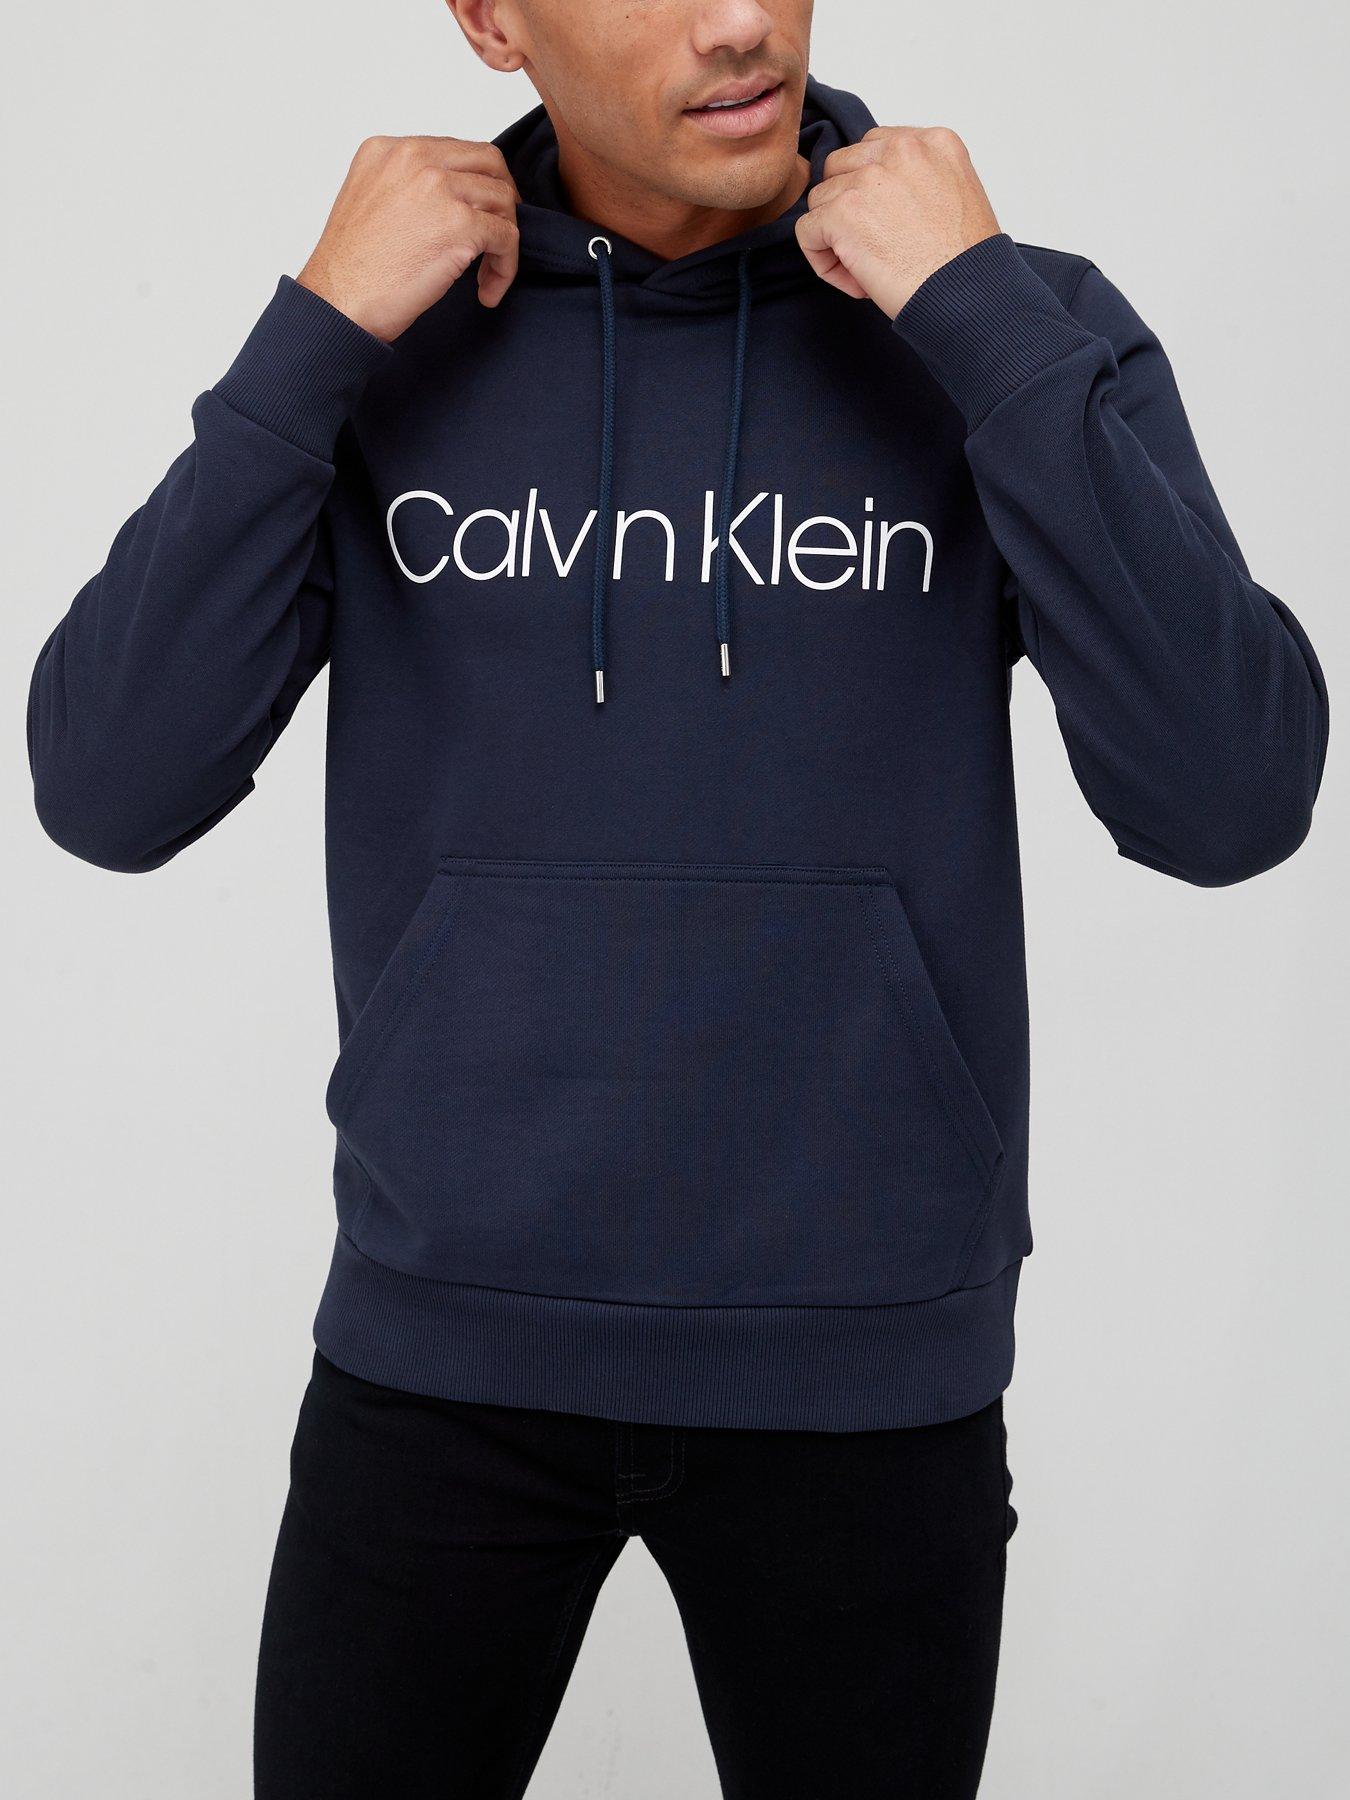 Men's Calvin Klein Hoodies & Sweatshirts 